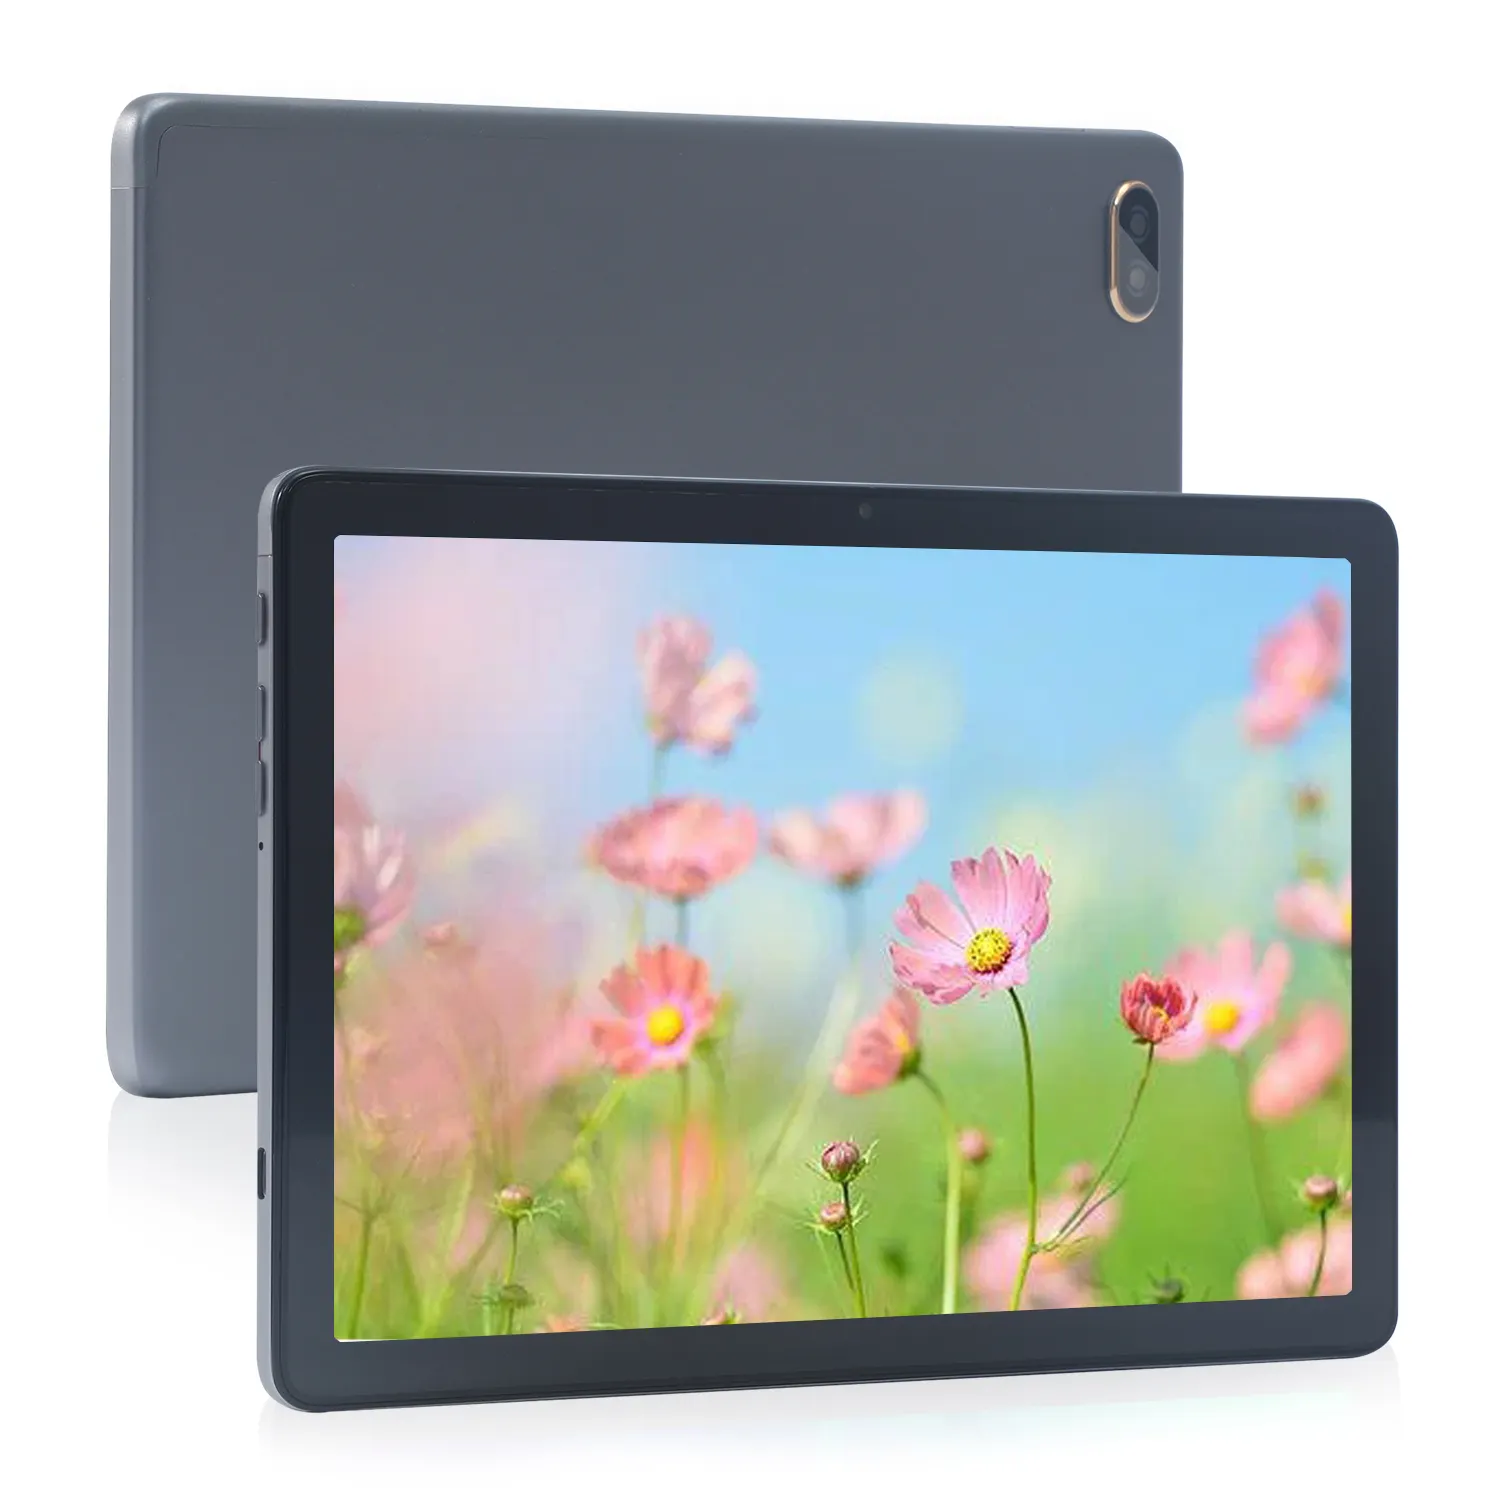 Yüksek son kullanım 3G/4G çift SIM kart Tablet telefonları Gps dokunmatik Tablet 10 inç iş için tablet PC